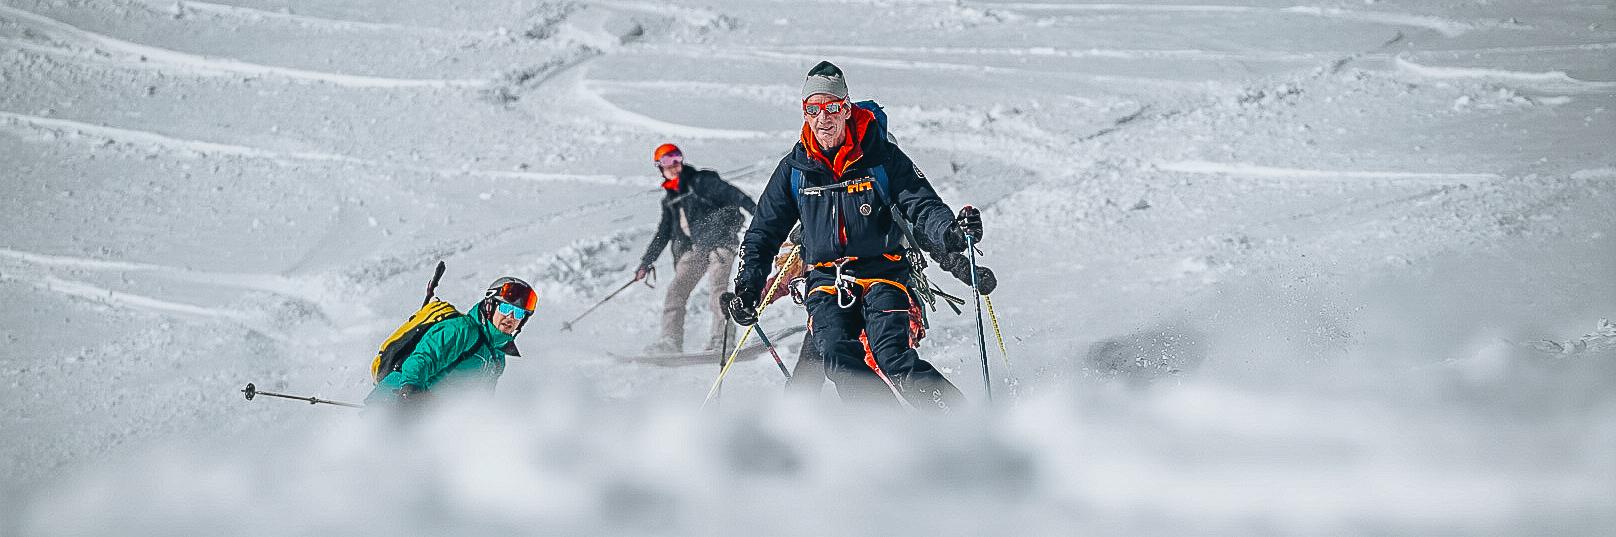 Gérald TRESALLET  Skiing Instructor, Mountain Guide